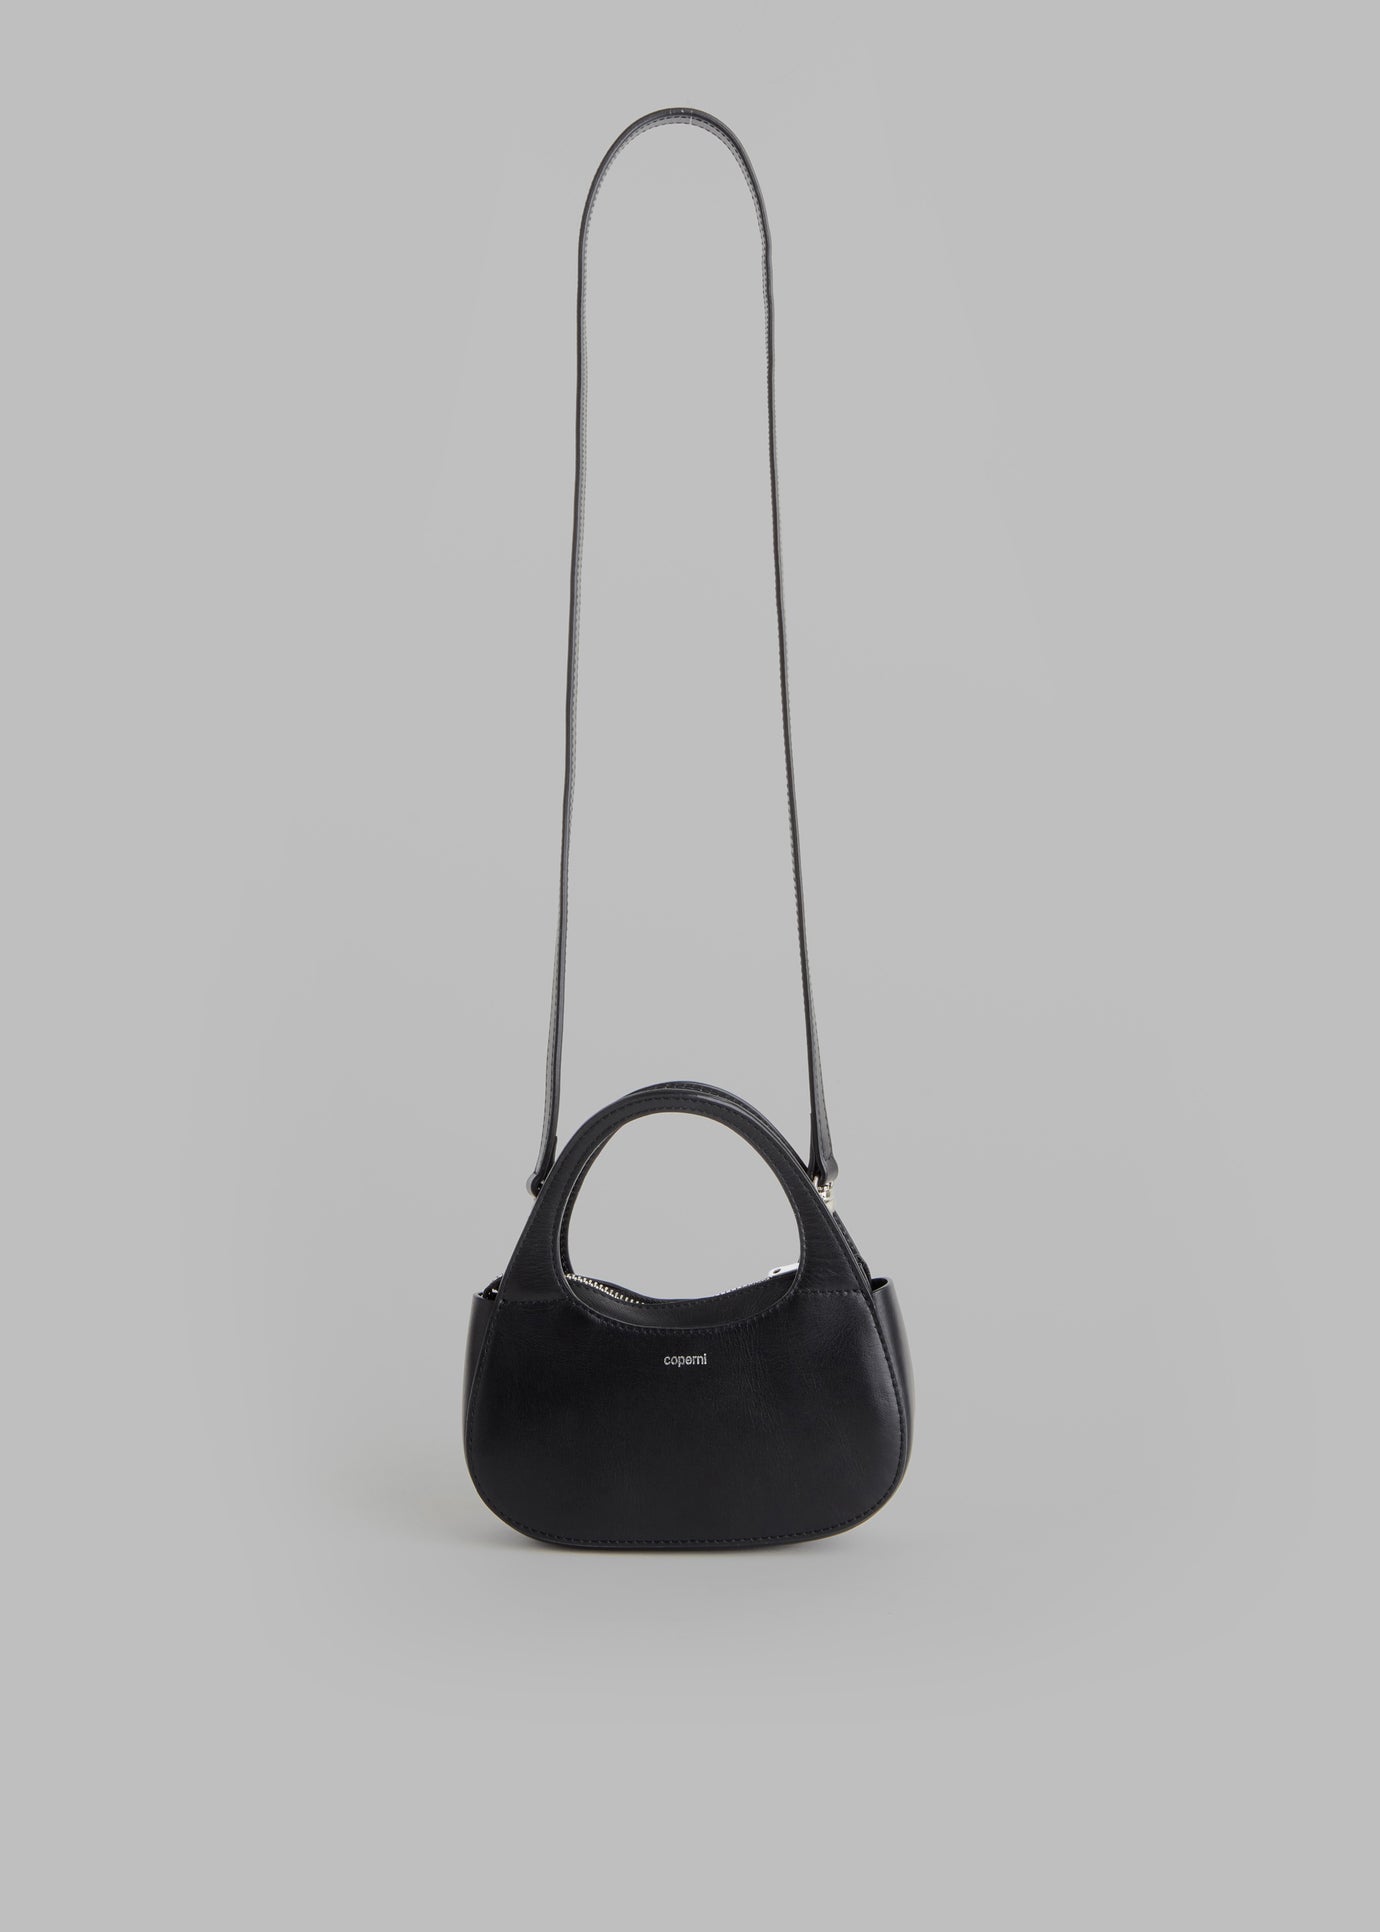 Coperni Micro Baguette Swipe Bag - Black